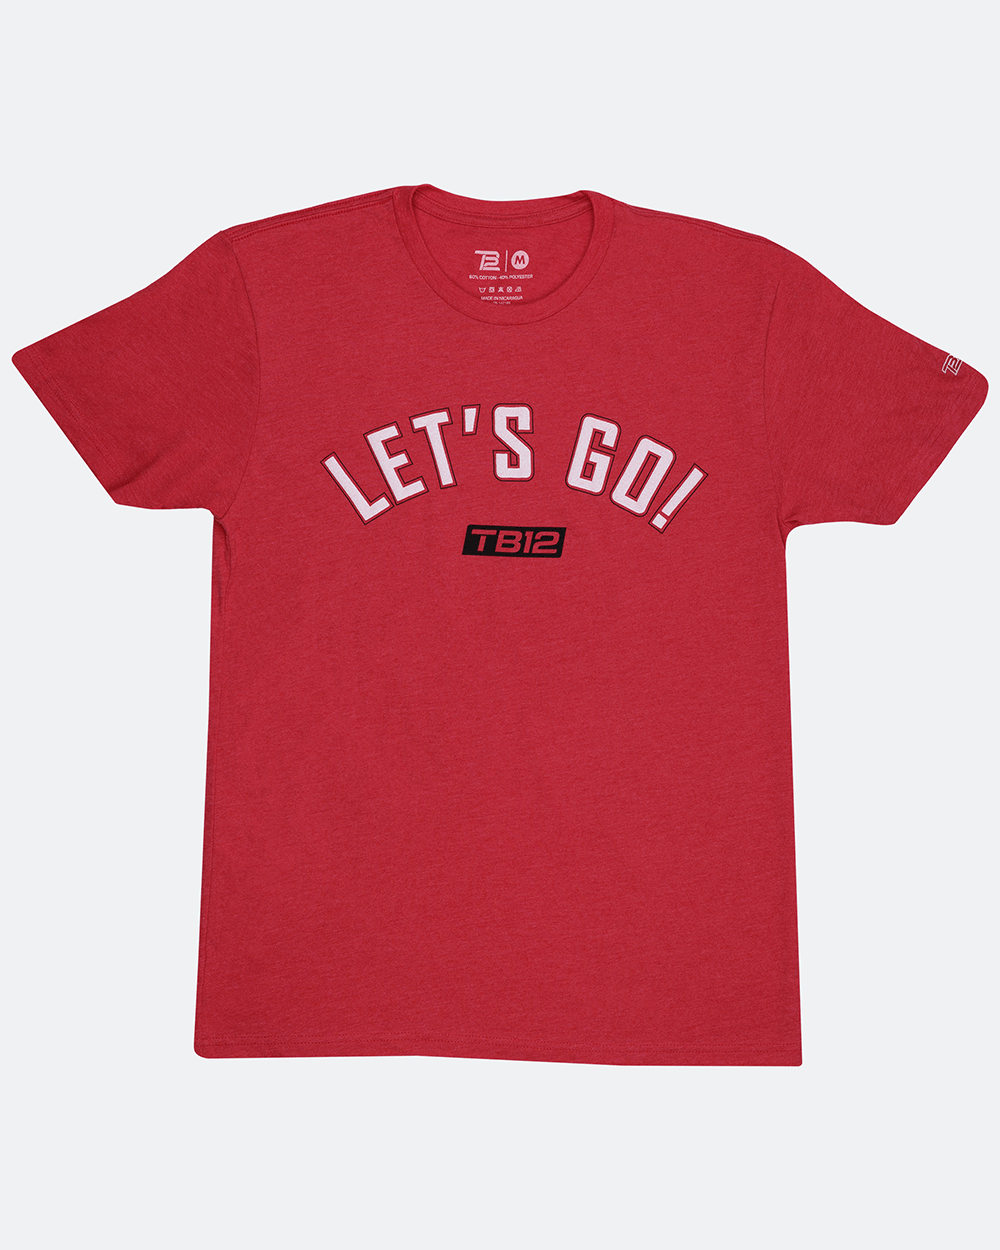 TB12 Let's Go T-Shirt